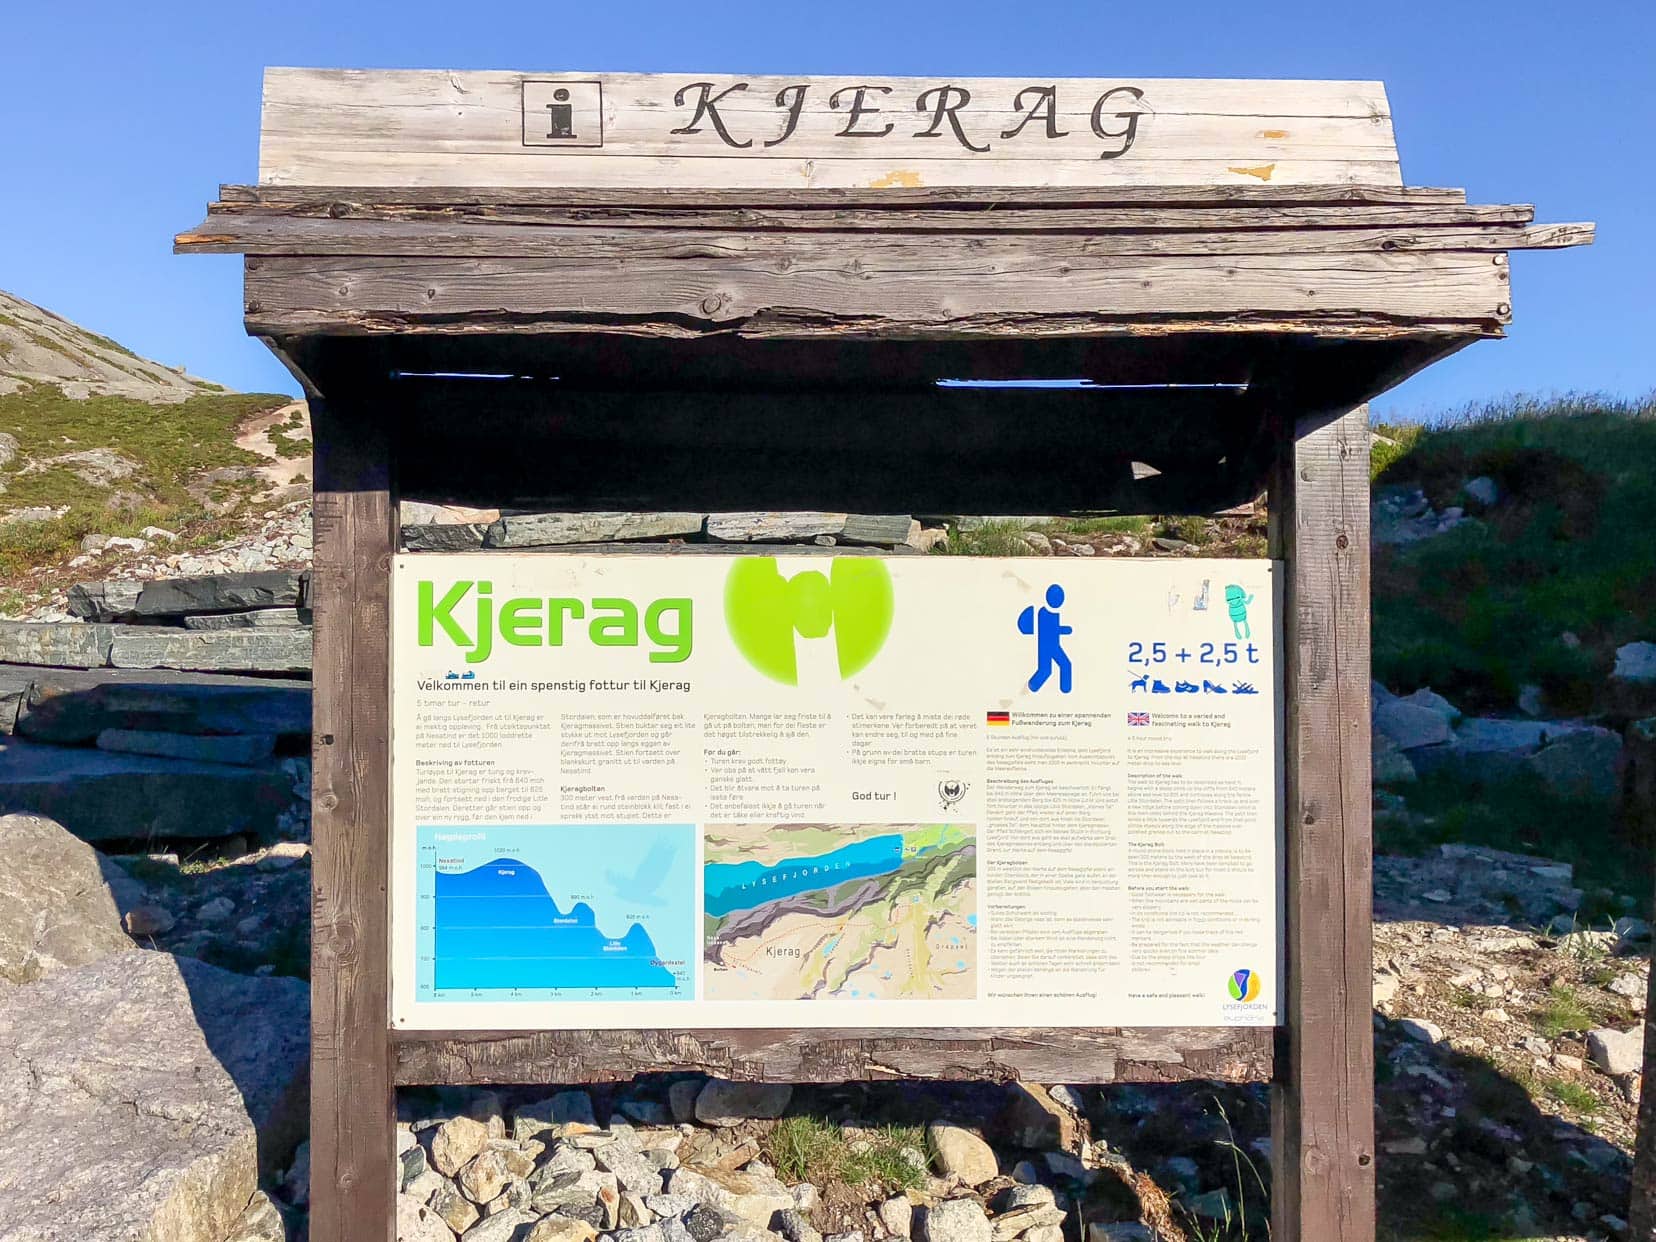 kjerag_start-of-hike-sign_